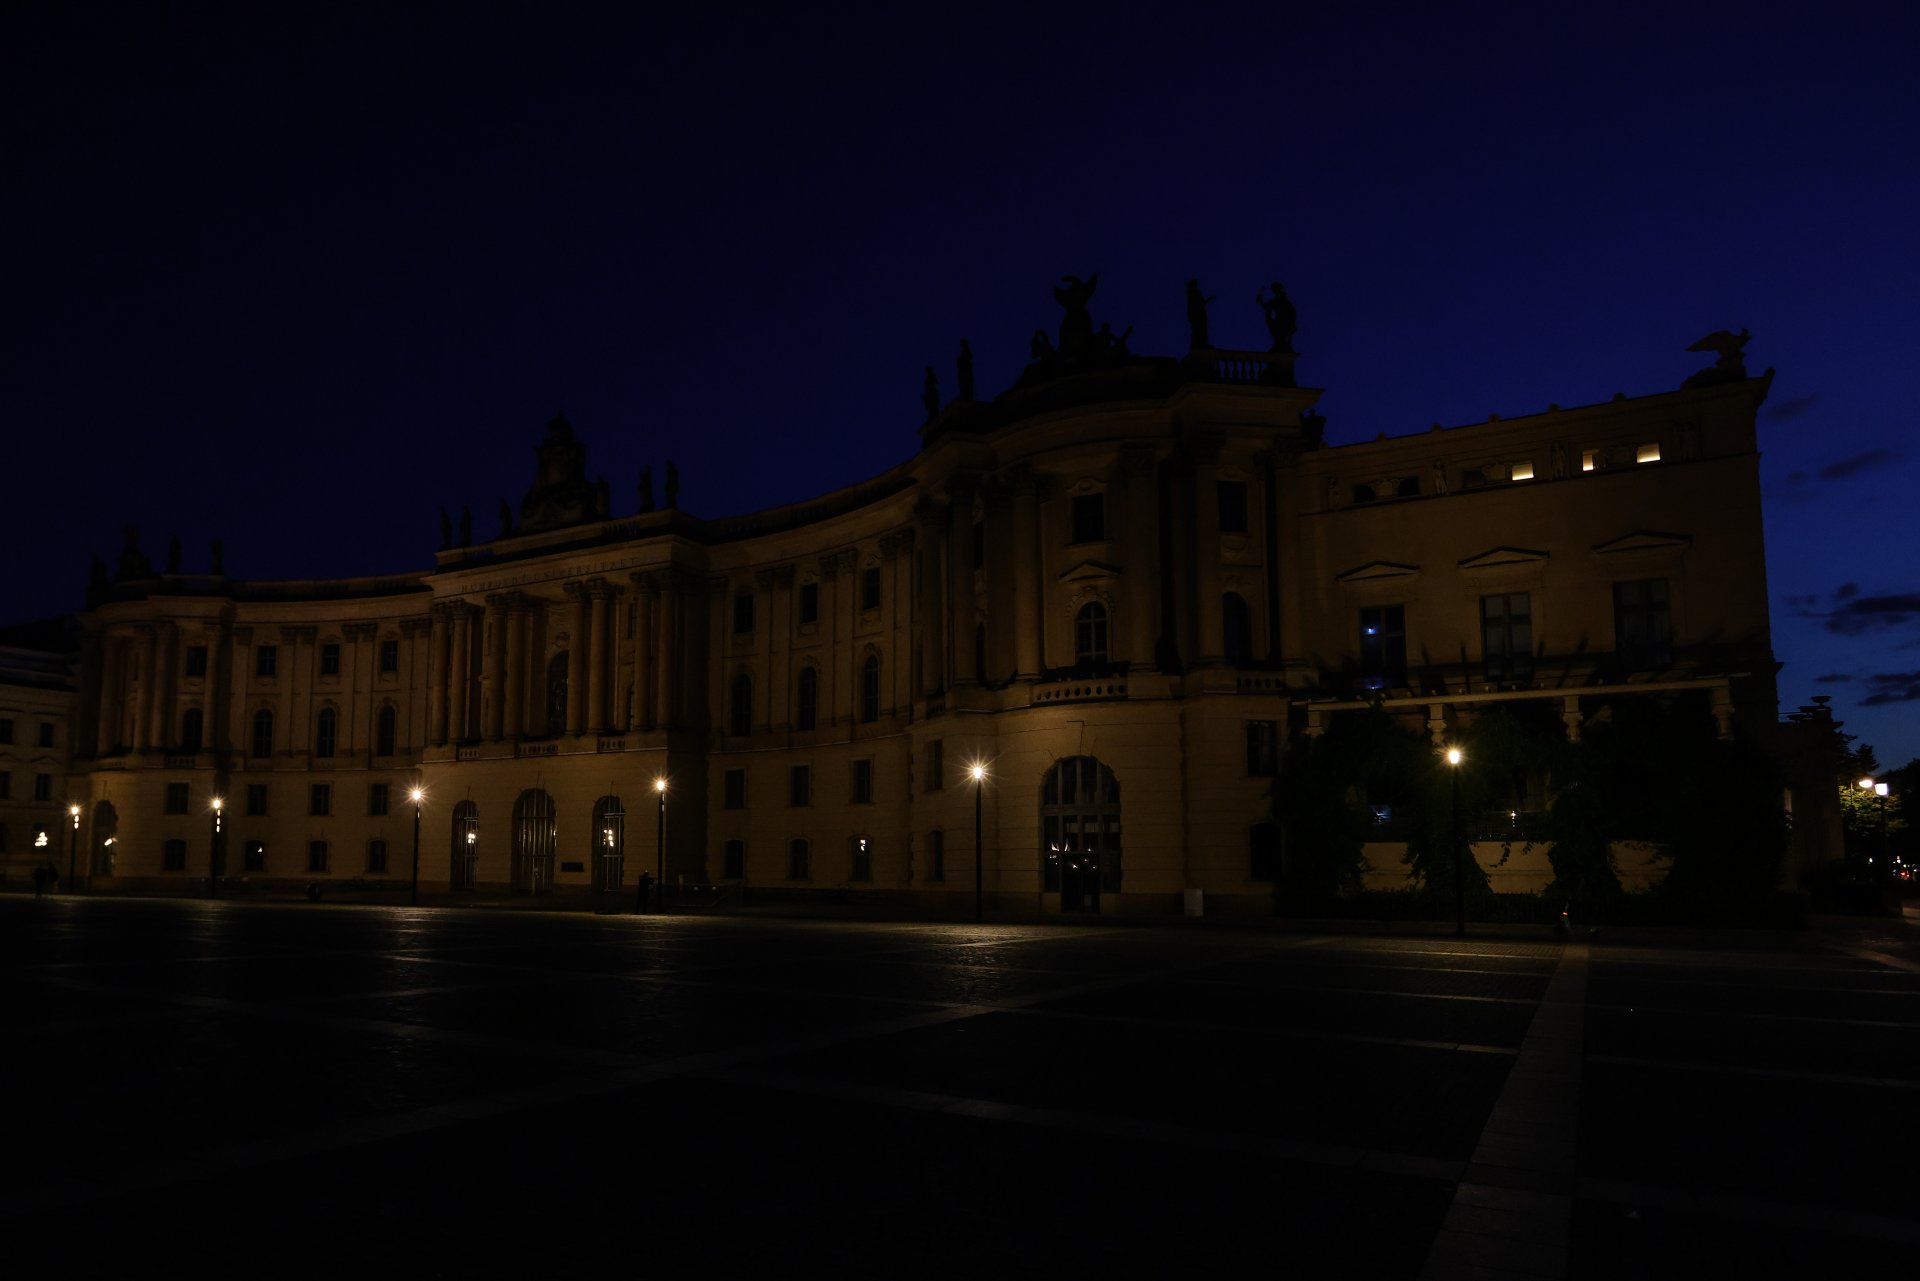 27 ЮЛИ: Изглед към Altes Palais (Стария дворец) с изключено осветление на фасадата на 27 юли 2022 г. в Берлин, Германия. 